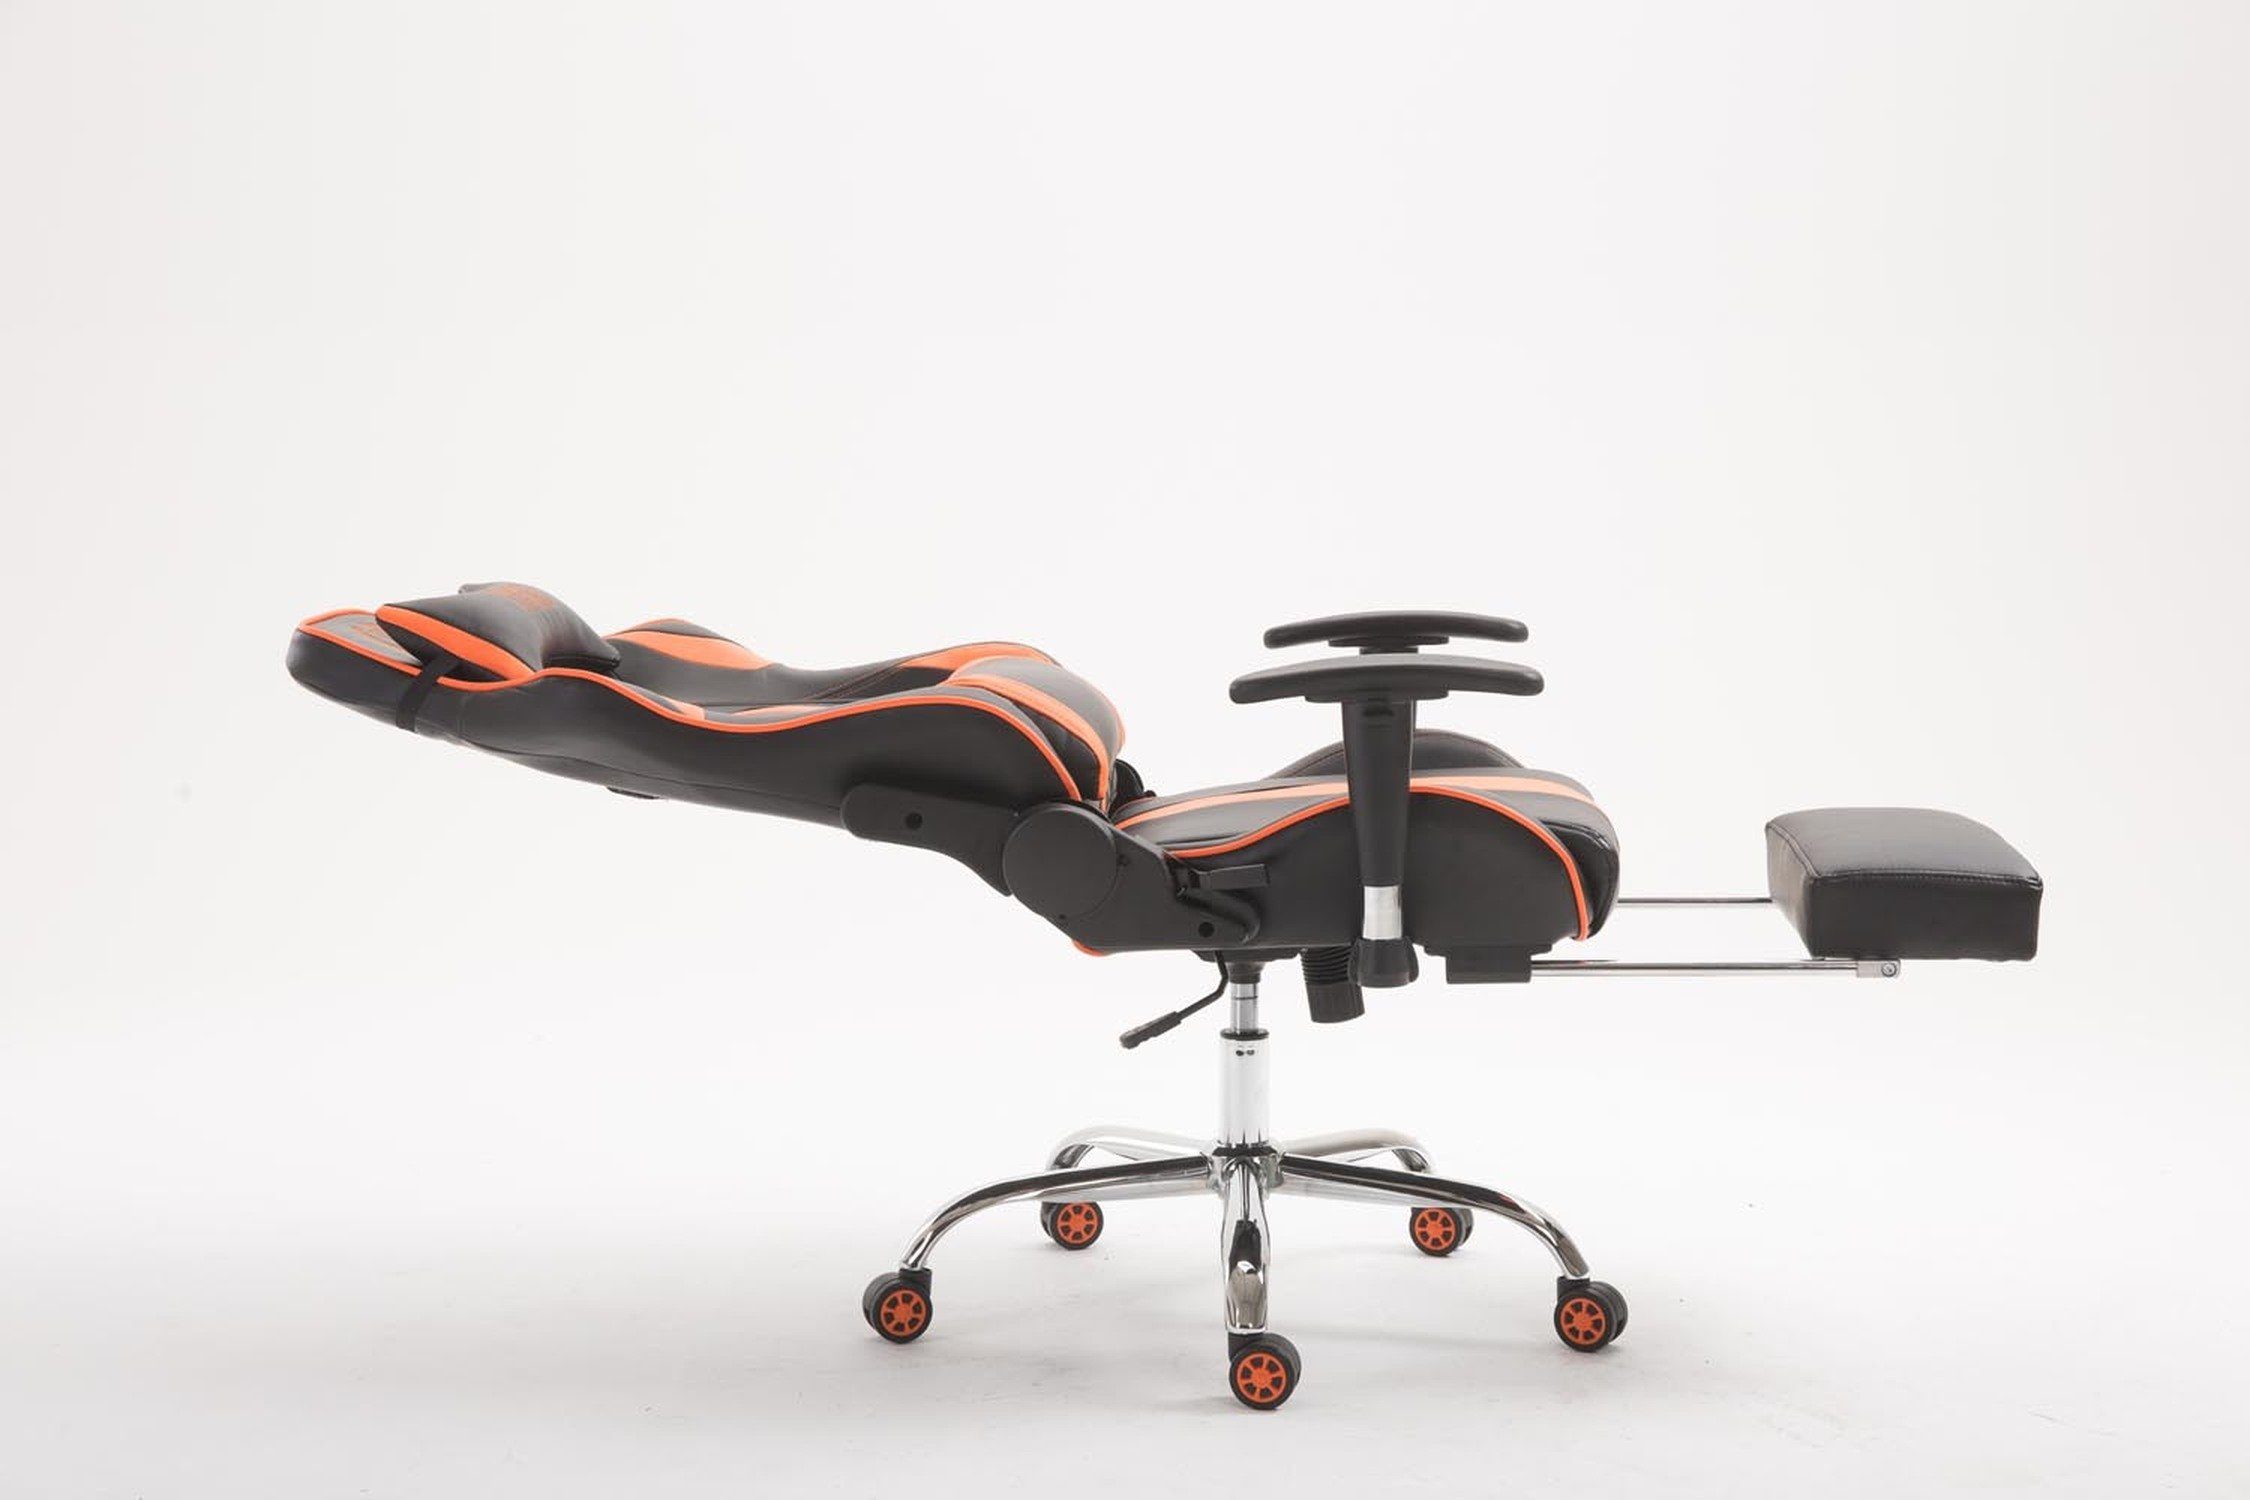 TPFLiving Gaming-Stuhl Limitless-2 mit bequemer - Metall 360° höhenverstellbar Gestell: Rückenlehne Drehstuhl, chrom schwarz/orange Kunstleder Racingstuhl, drehbar - (Schreibtischstuhl, Sitzfläche: Chefsessel), - Gamingstuhl